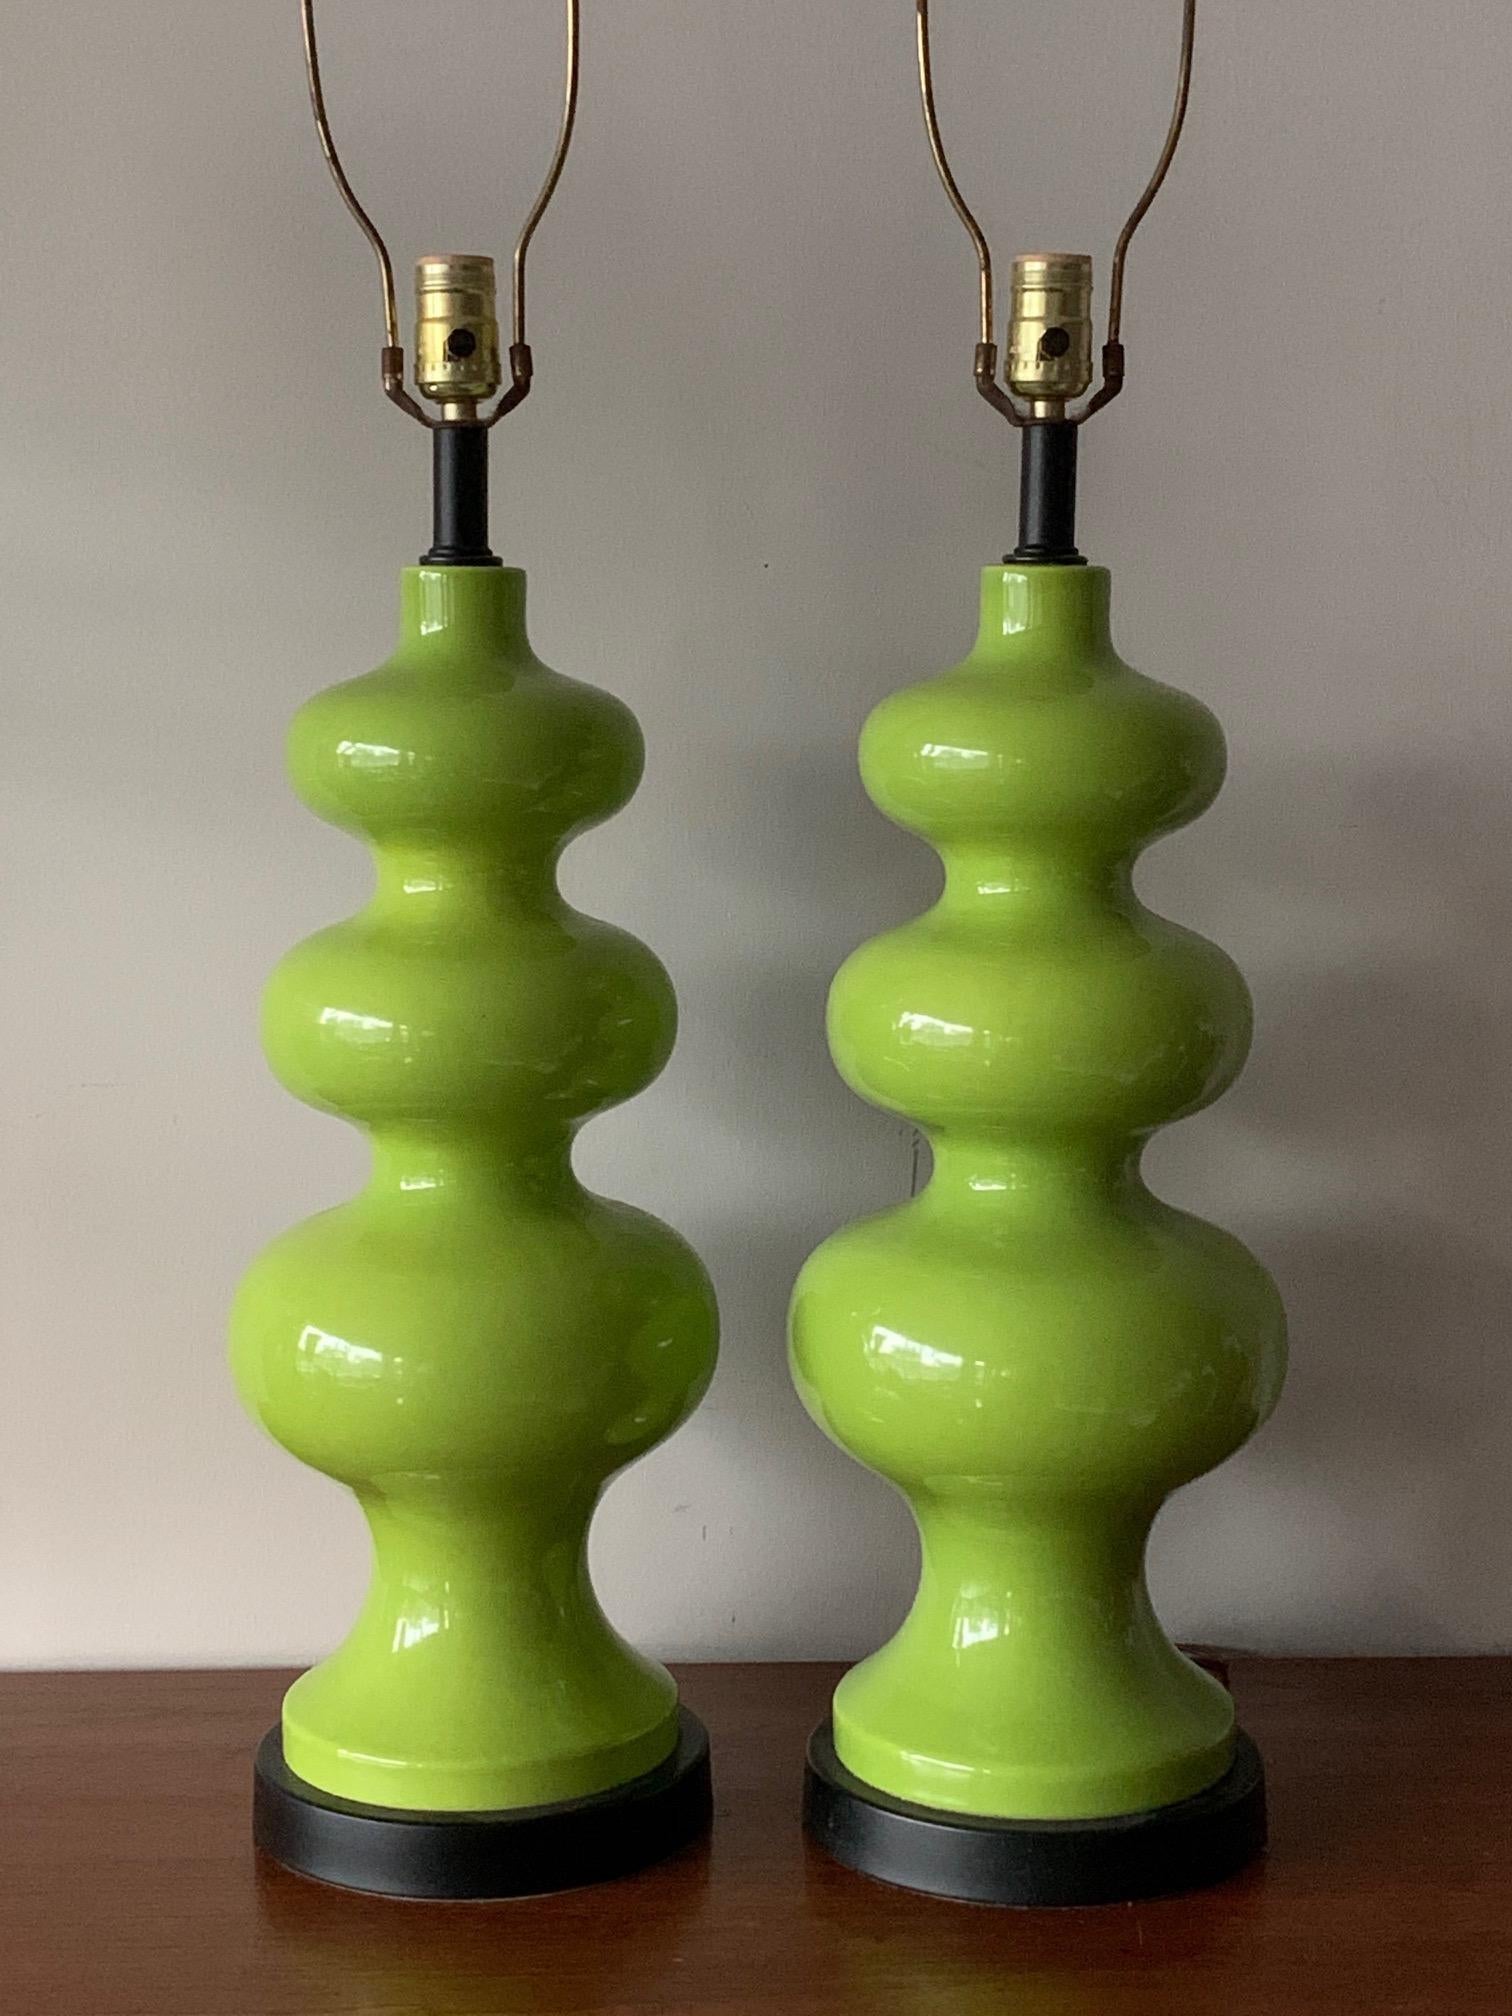 Ein Paar 1970er Jahre skulpturale Lampen - erstaunliche mintgrüne Farbe, alle original mit passenden grünen Schirmen.
Diese sind groß und sehr beeindruckend - ein seltener Fund! Gesamthöhe mit Schirmen 41,5